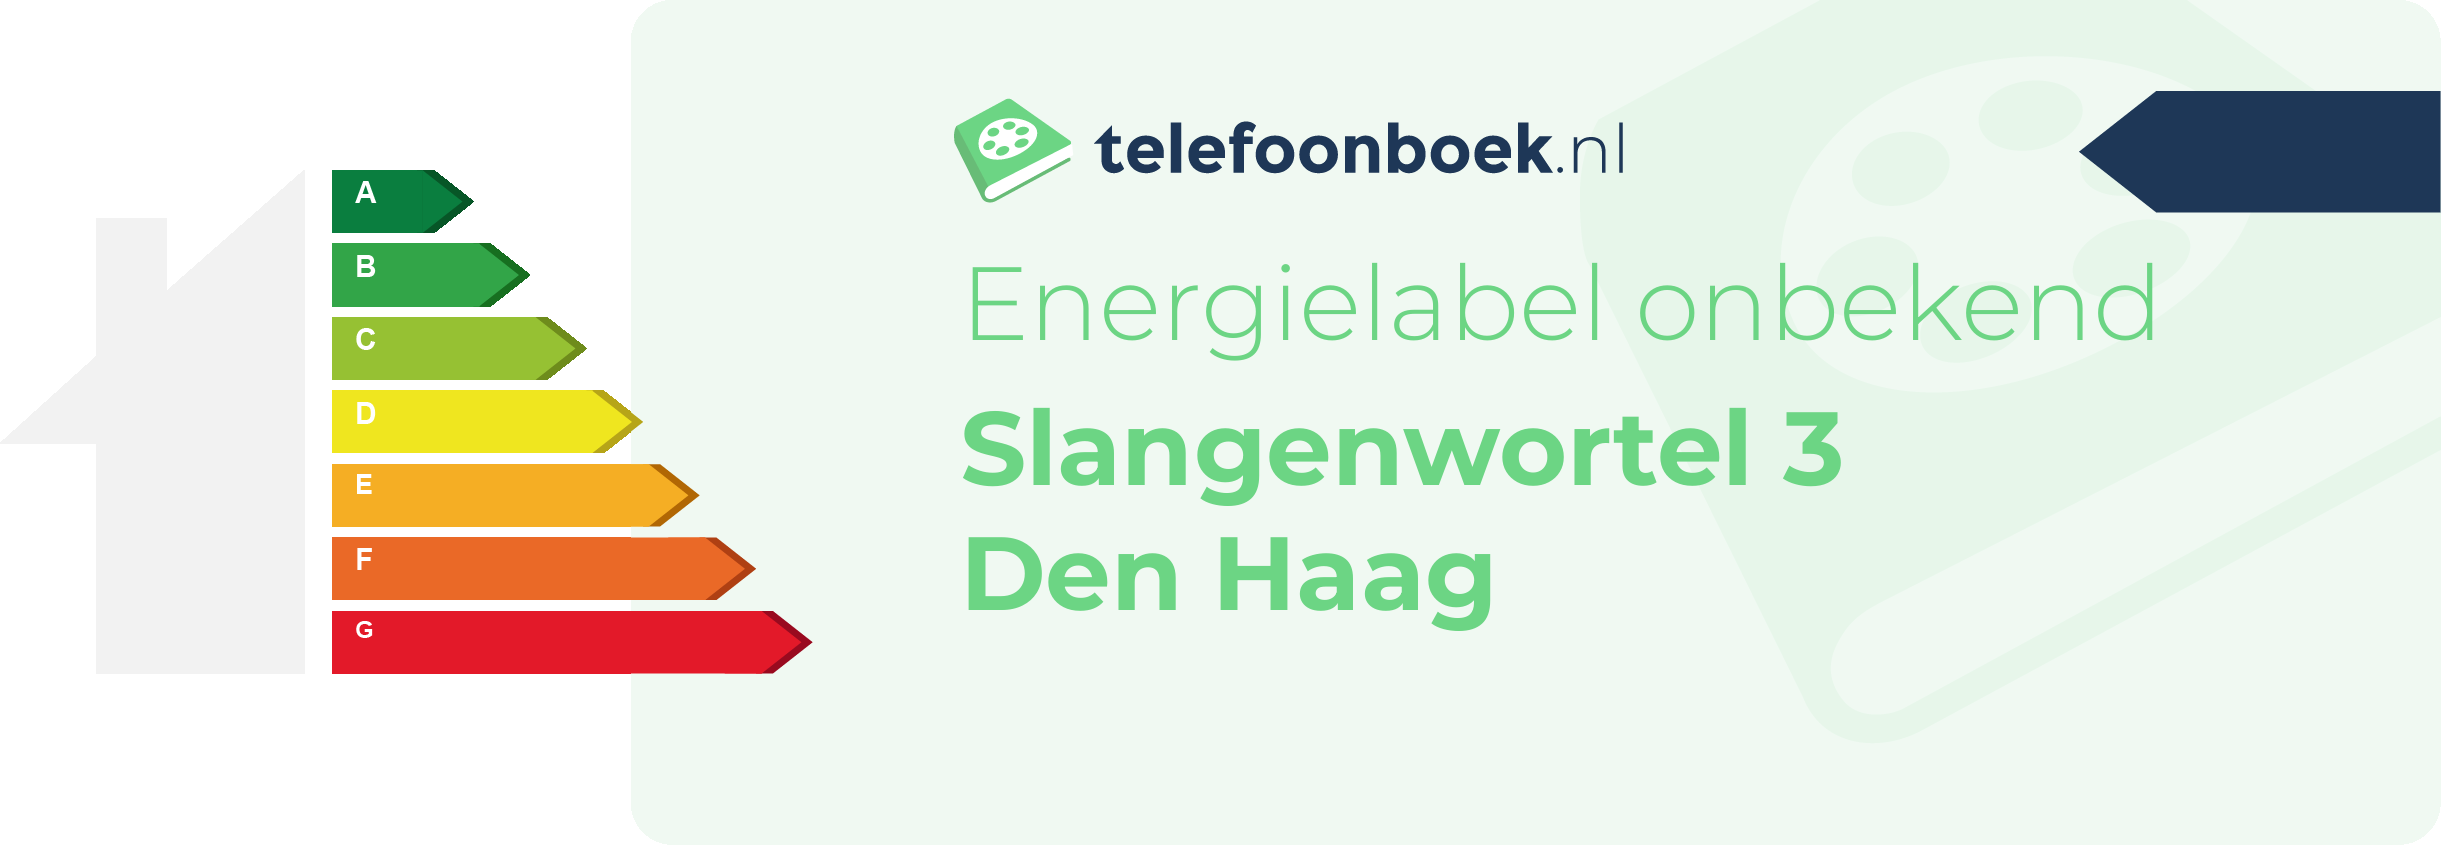 Energielabel Slangenwortel 3 Den Haag